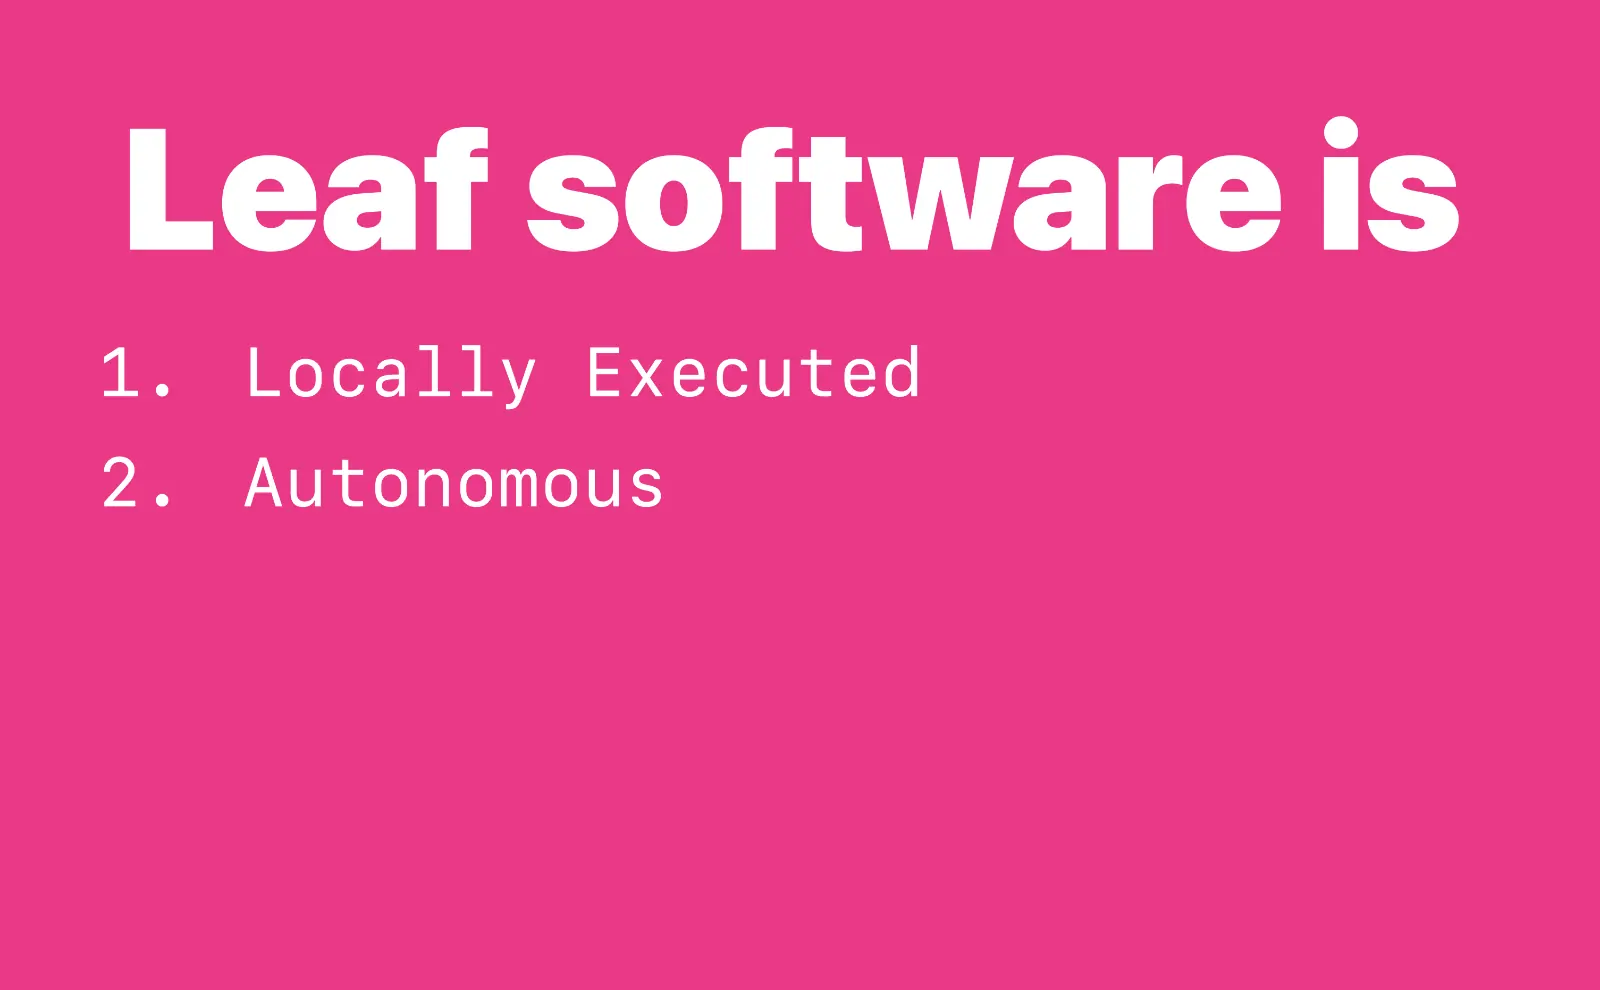 Leaf software is 2. Autonomous